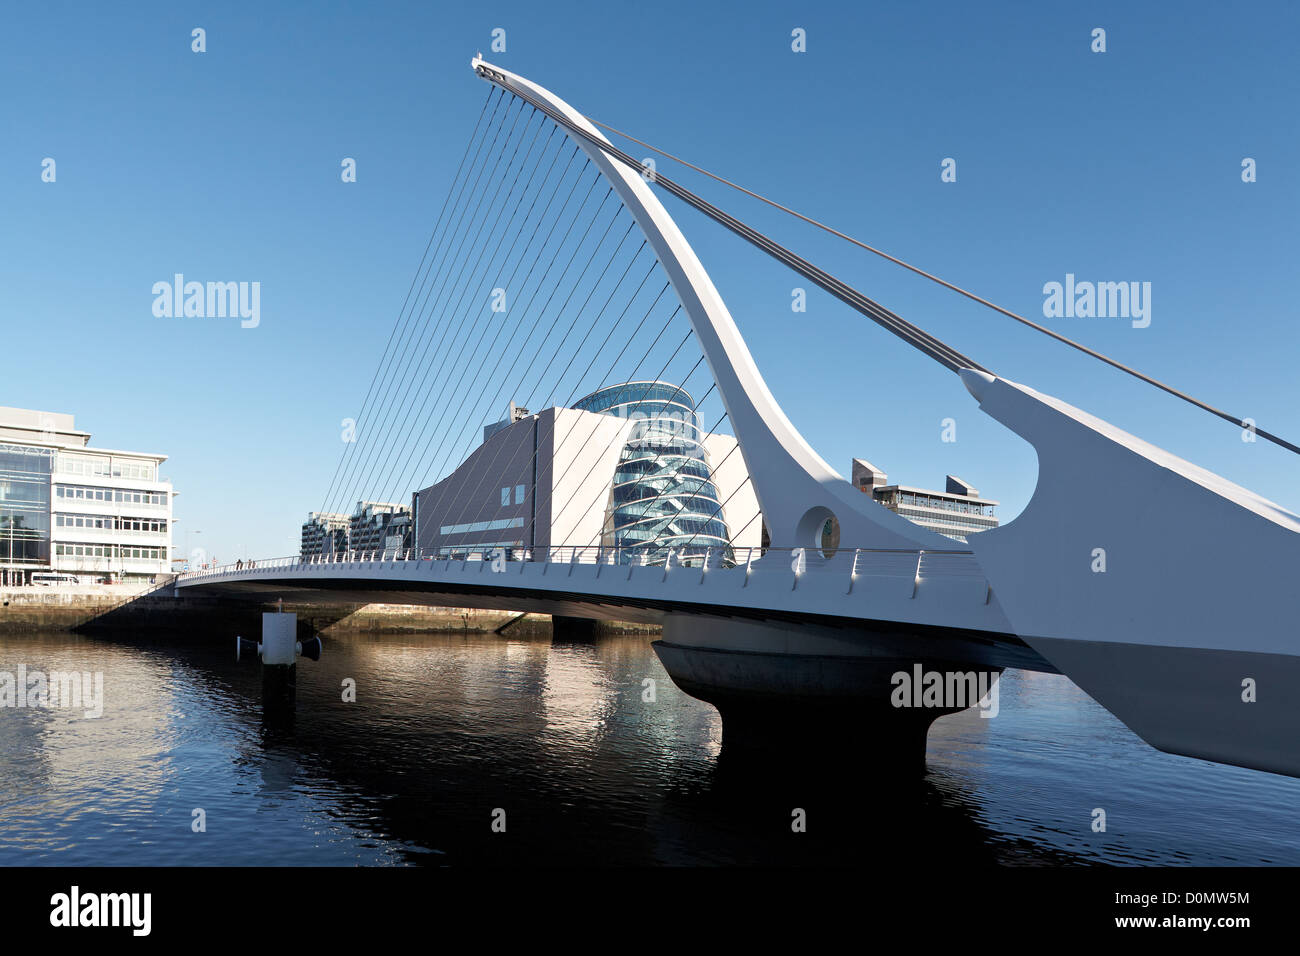 Irlanda Dublín Liffey Samuel Beckett Bridge Dublin Docklands el arquitecto Santiago Calatrava, que abrió en diciembre 10 2009. Foto de stock